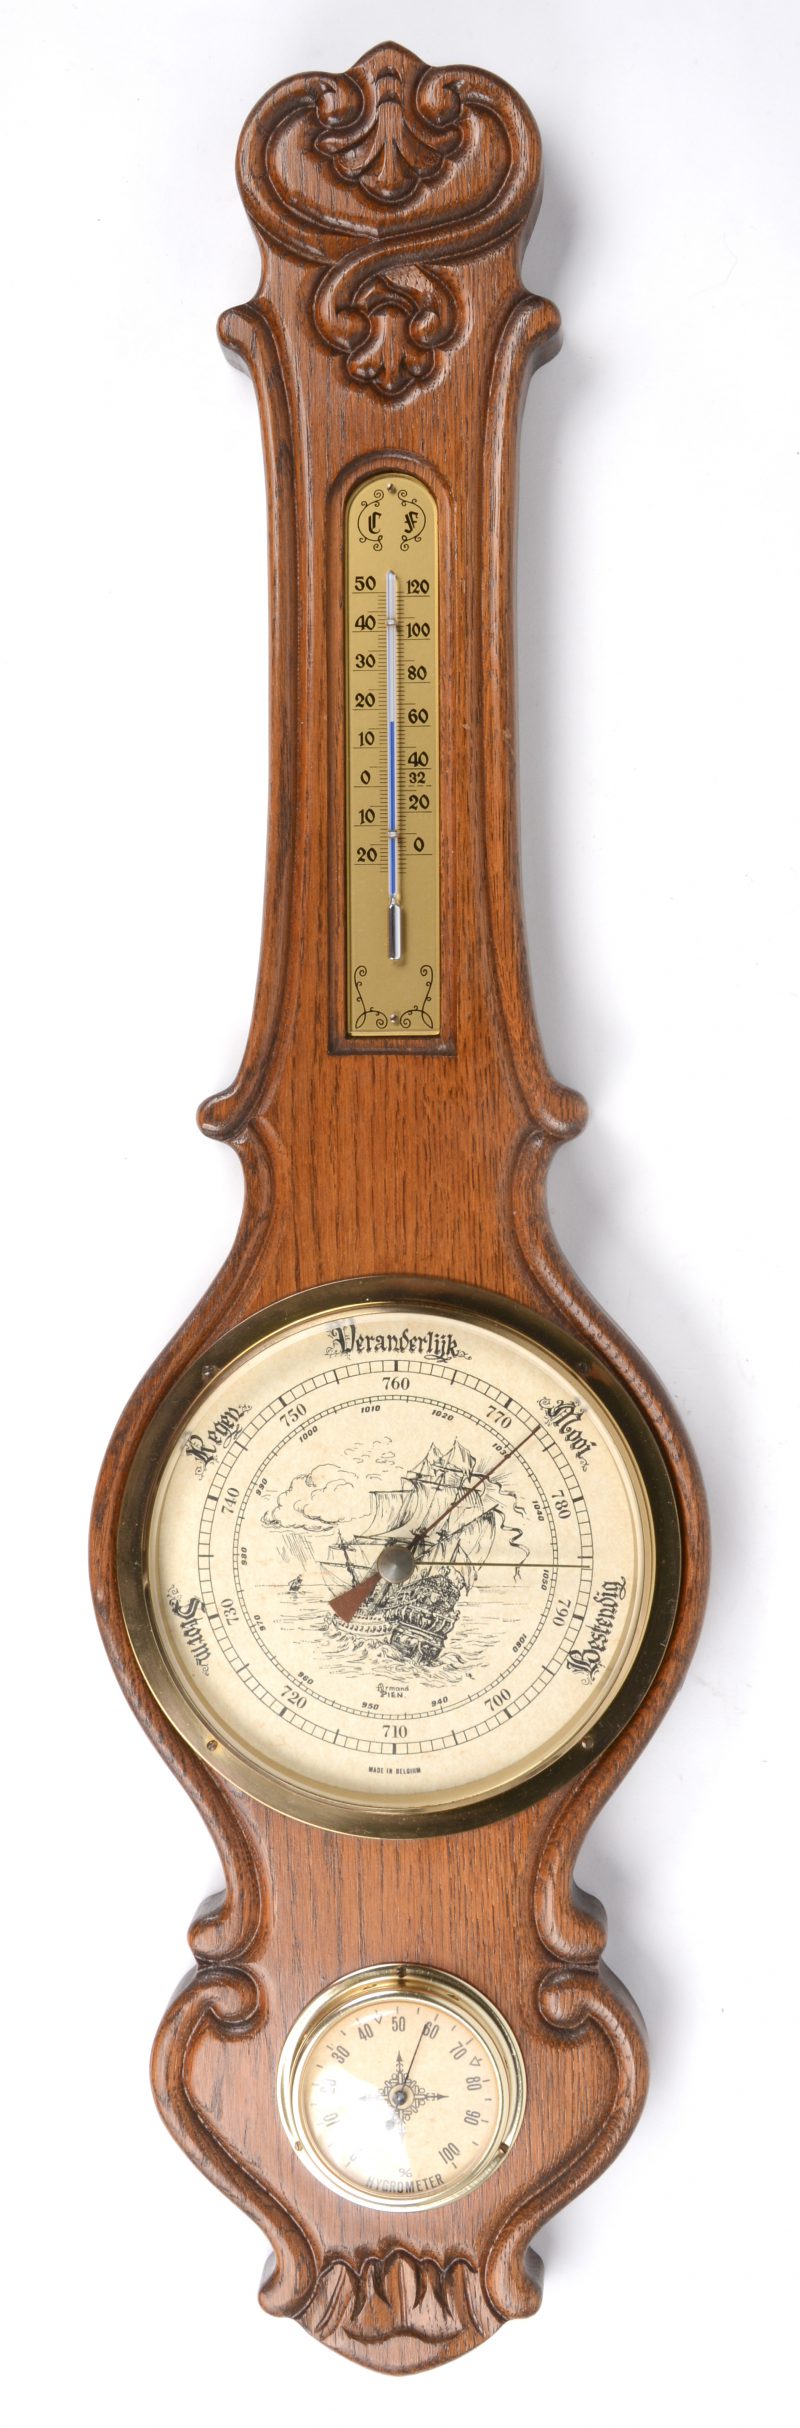 Een barometer - thermometer in houten kast.